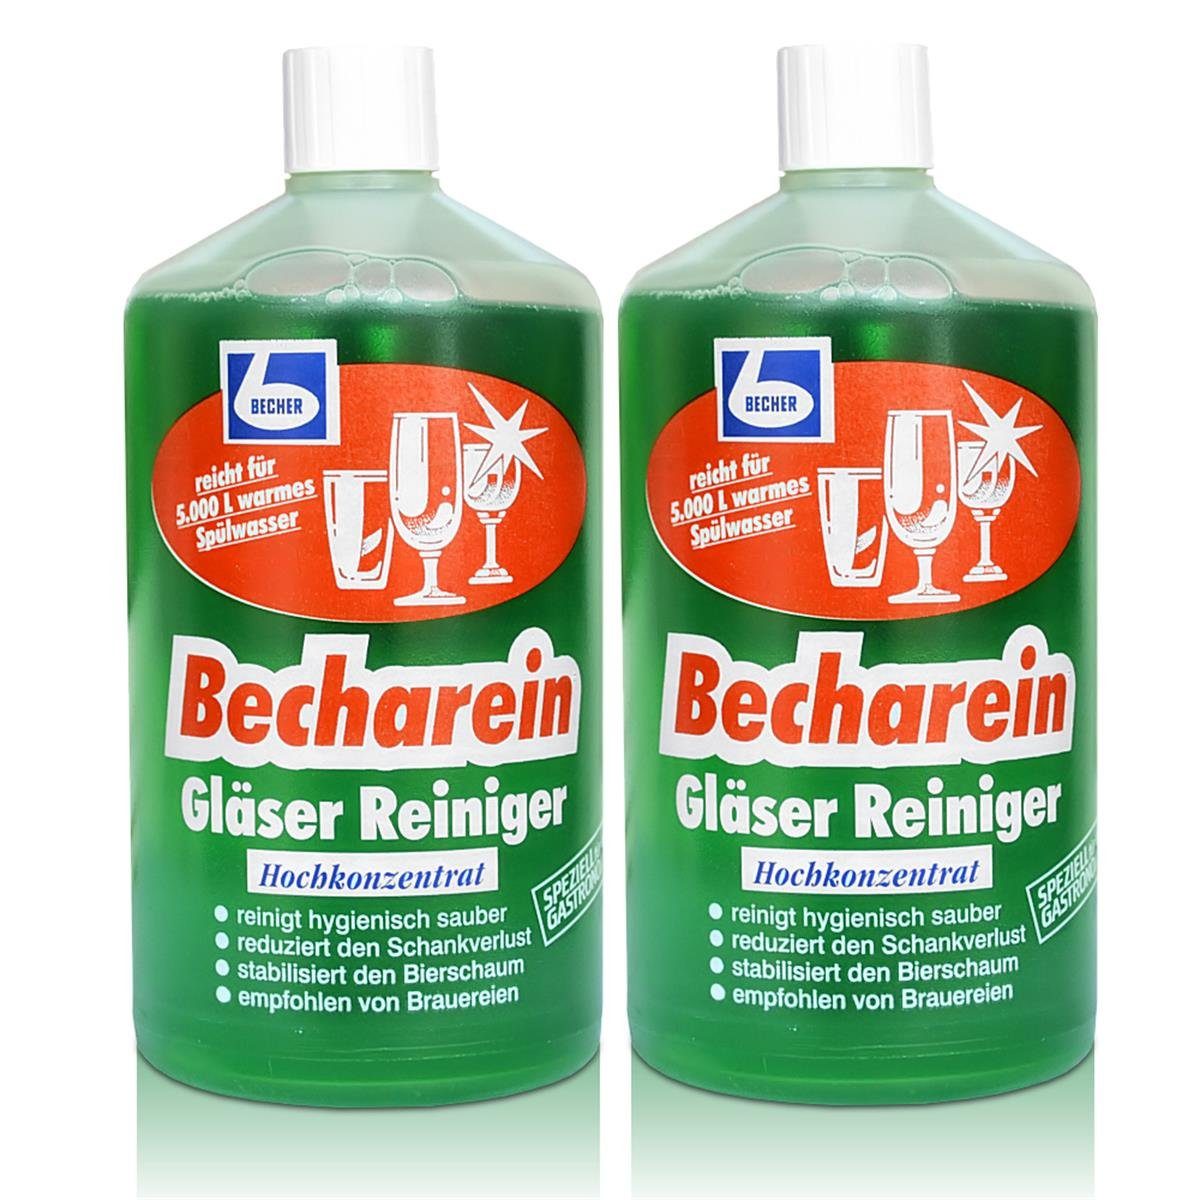 Dr. Becher 2x Dr. Becher Becharein Gläser Reiniger Hochkonzentrat / 1 Liter Glasreiniger